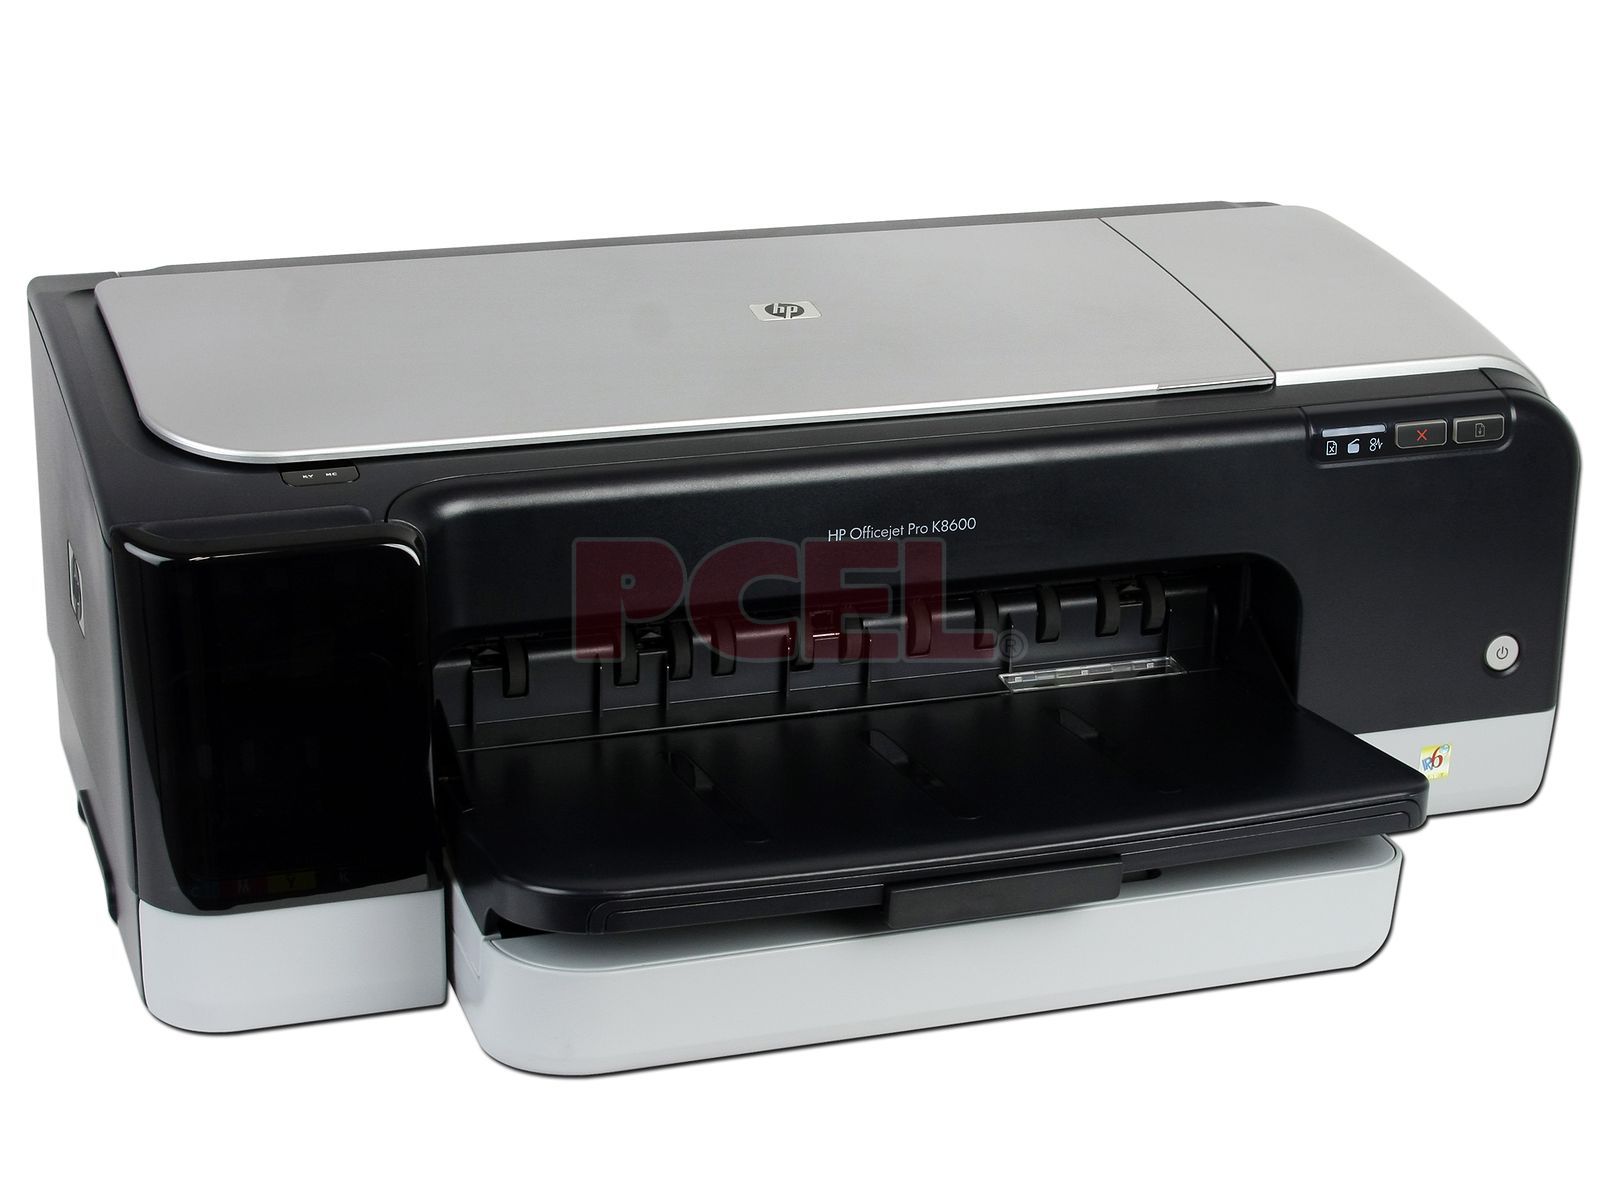 Existe Sofisticado entusiasta Impresora de Inyección a Color HP Officejet Pro serie K8600, Doble Carta